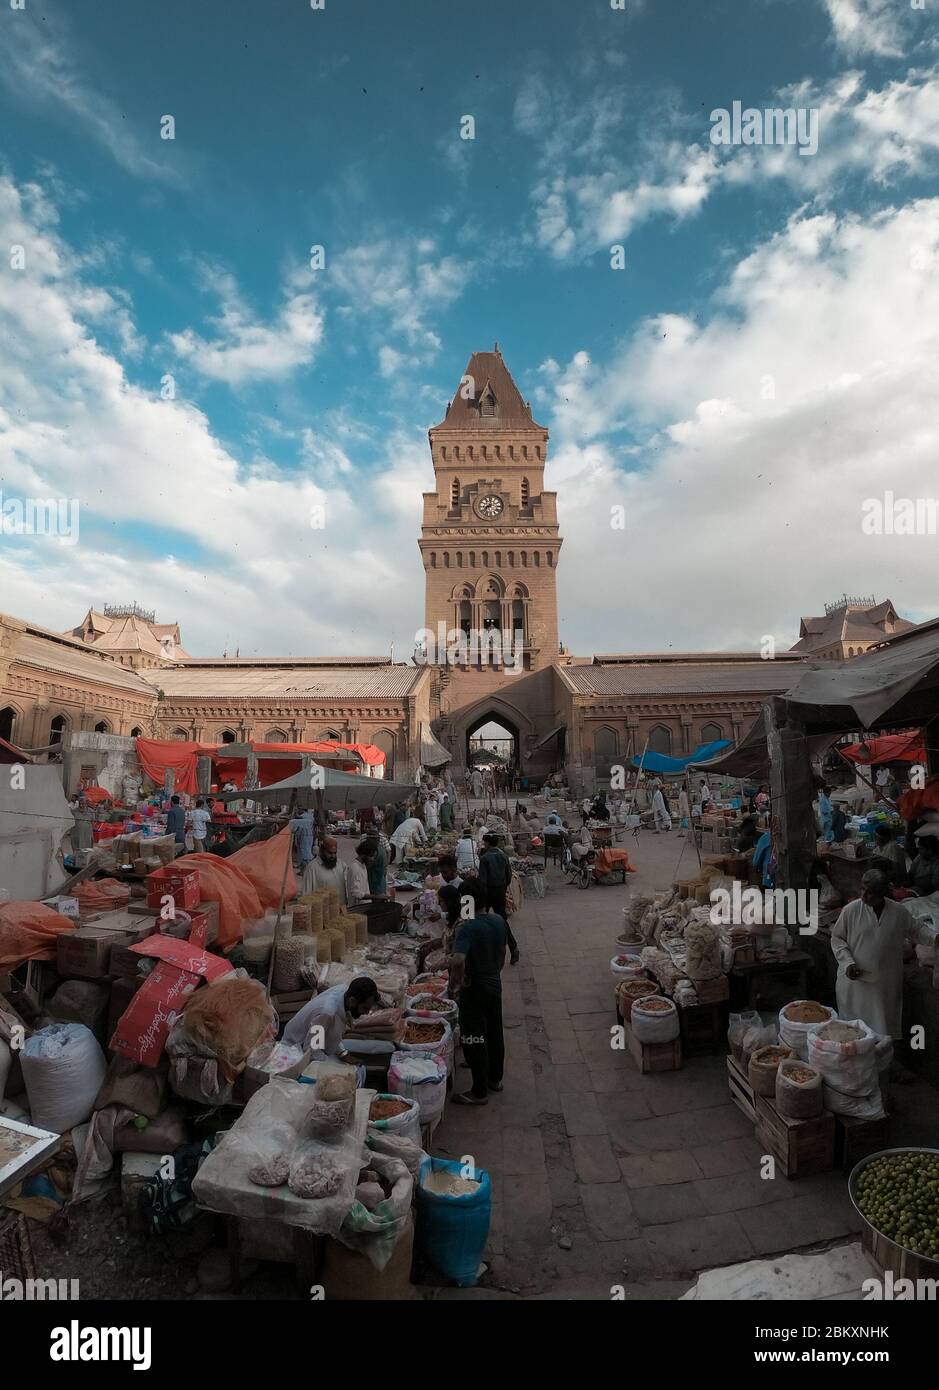 La belle architecture du marché de l'impératrice Karachi Bâtiment, UN site historique à Karachi, Sindh, Pakistan 09/09/2019 Banque D'Images